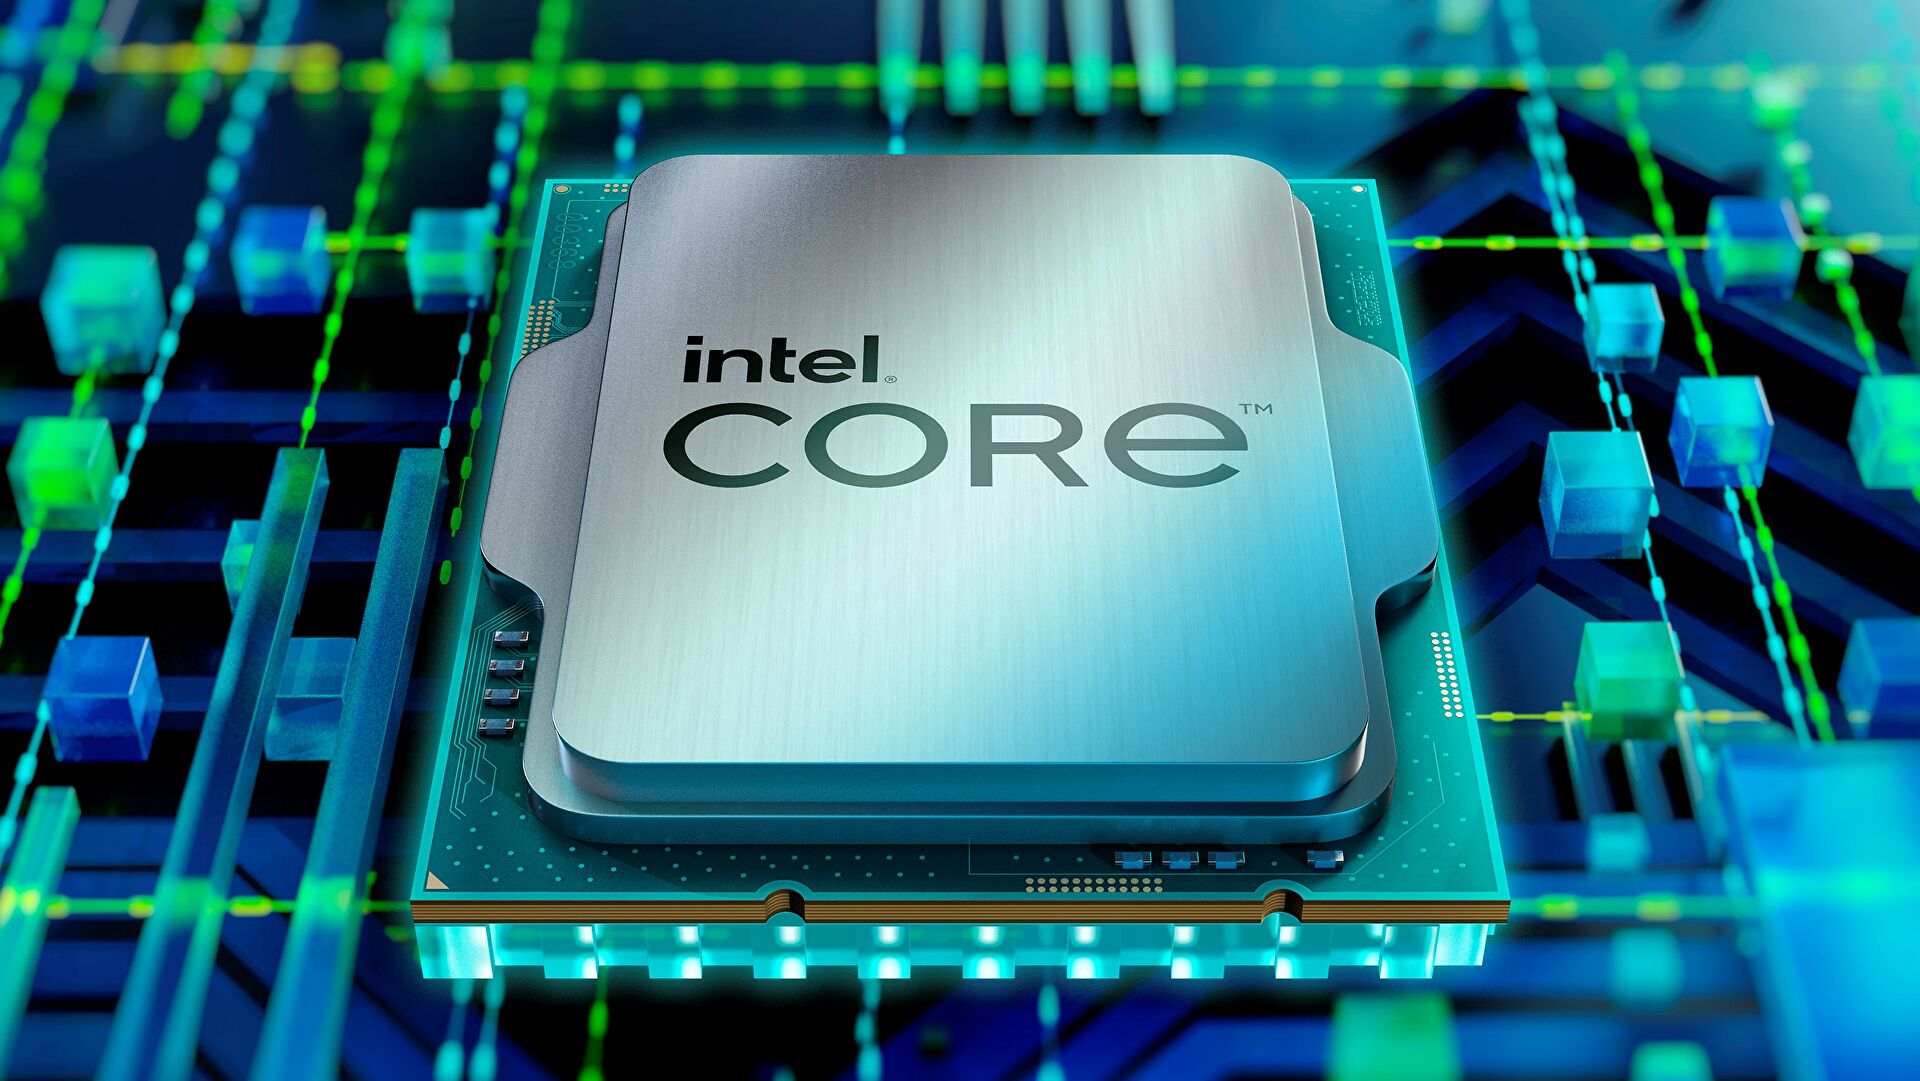 Điểm Benchmark của bản thử nghiệm CPU Intel Core i9-13900K 5,5 GHz Raptor Lake, bỏ xa Ryzen 9 5950X & Core i9-12900K trong các bài kiểm tra đơn và đa luồng